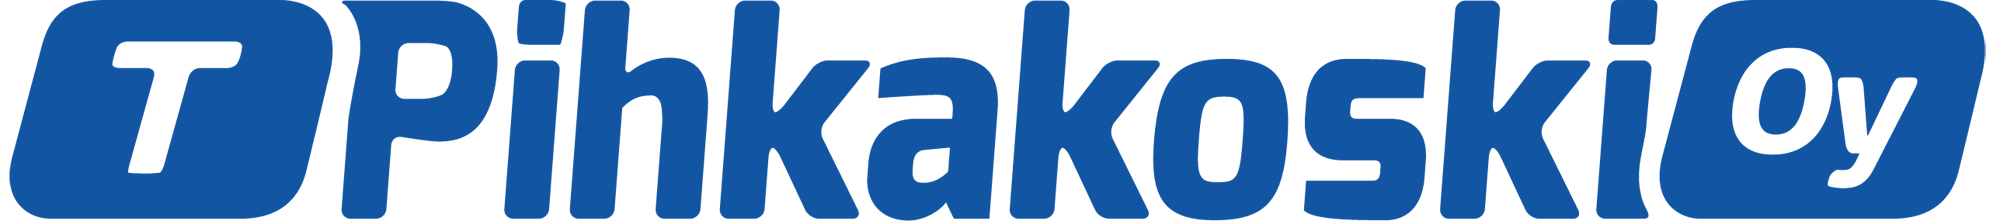 T_Pihkakoski_logo_Blue_CMYK